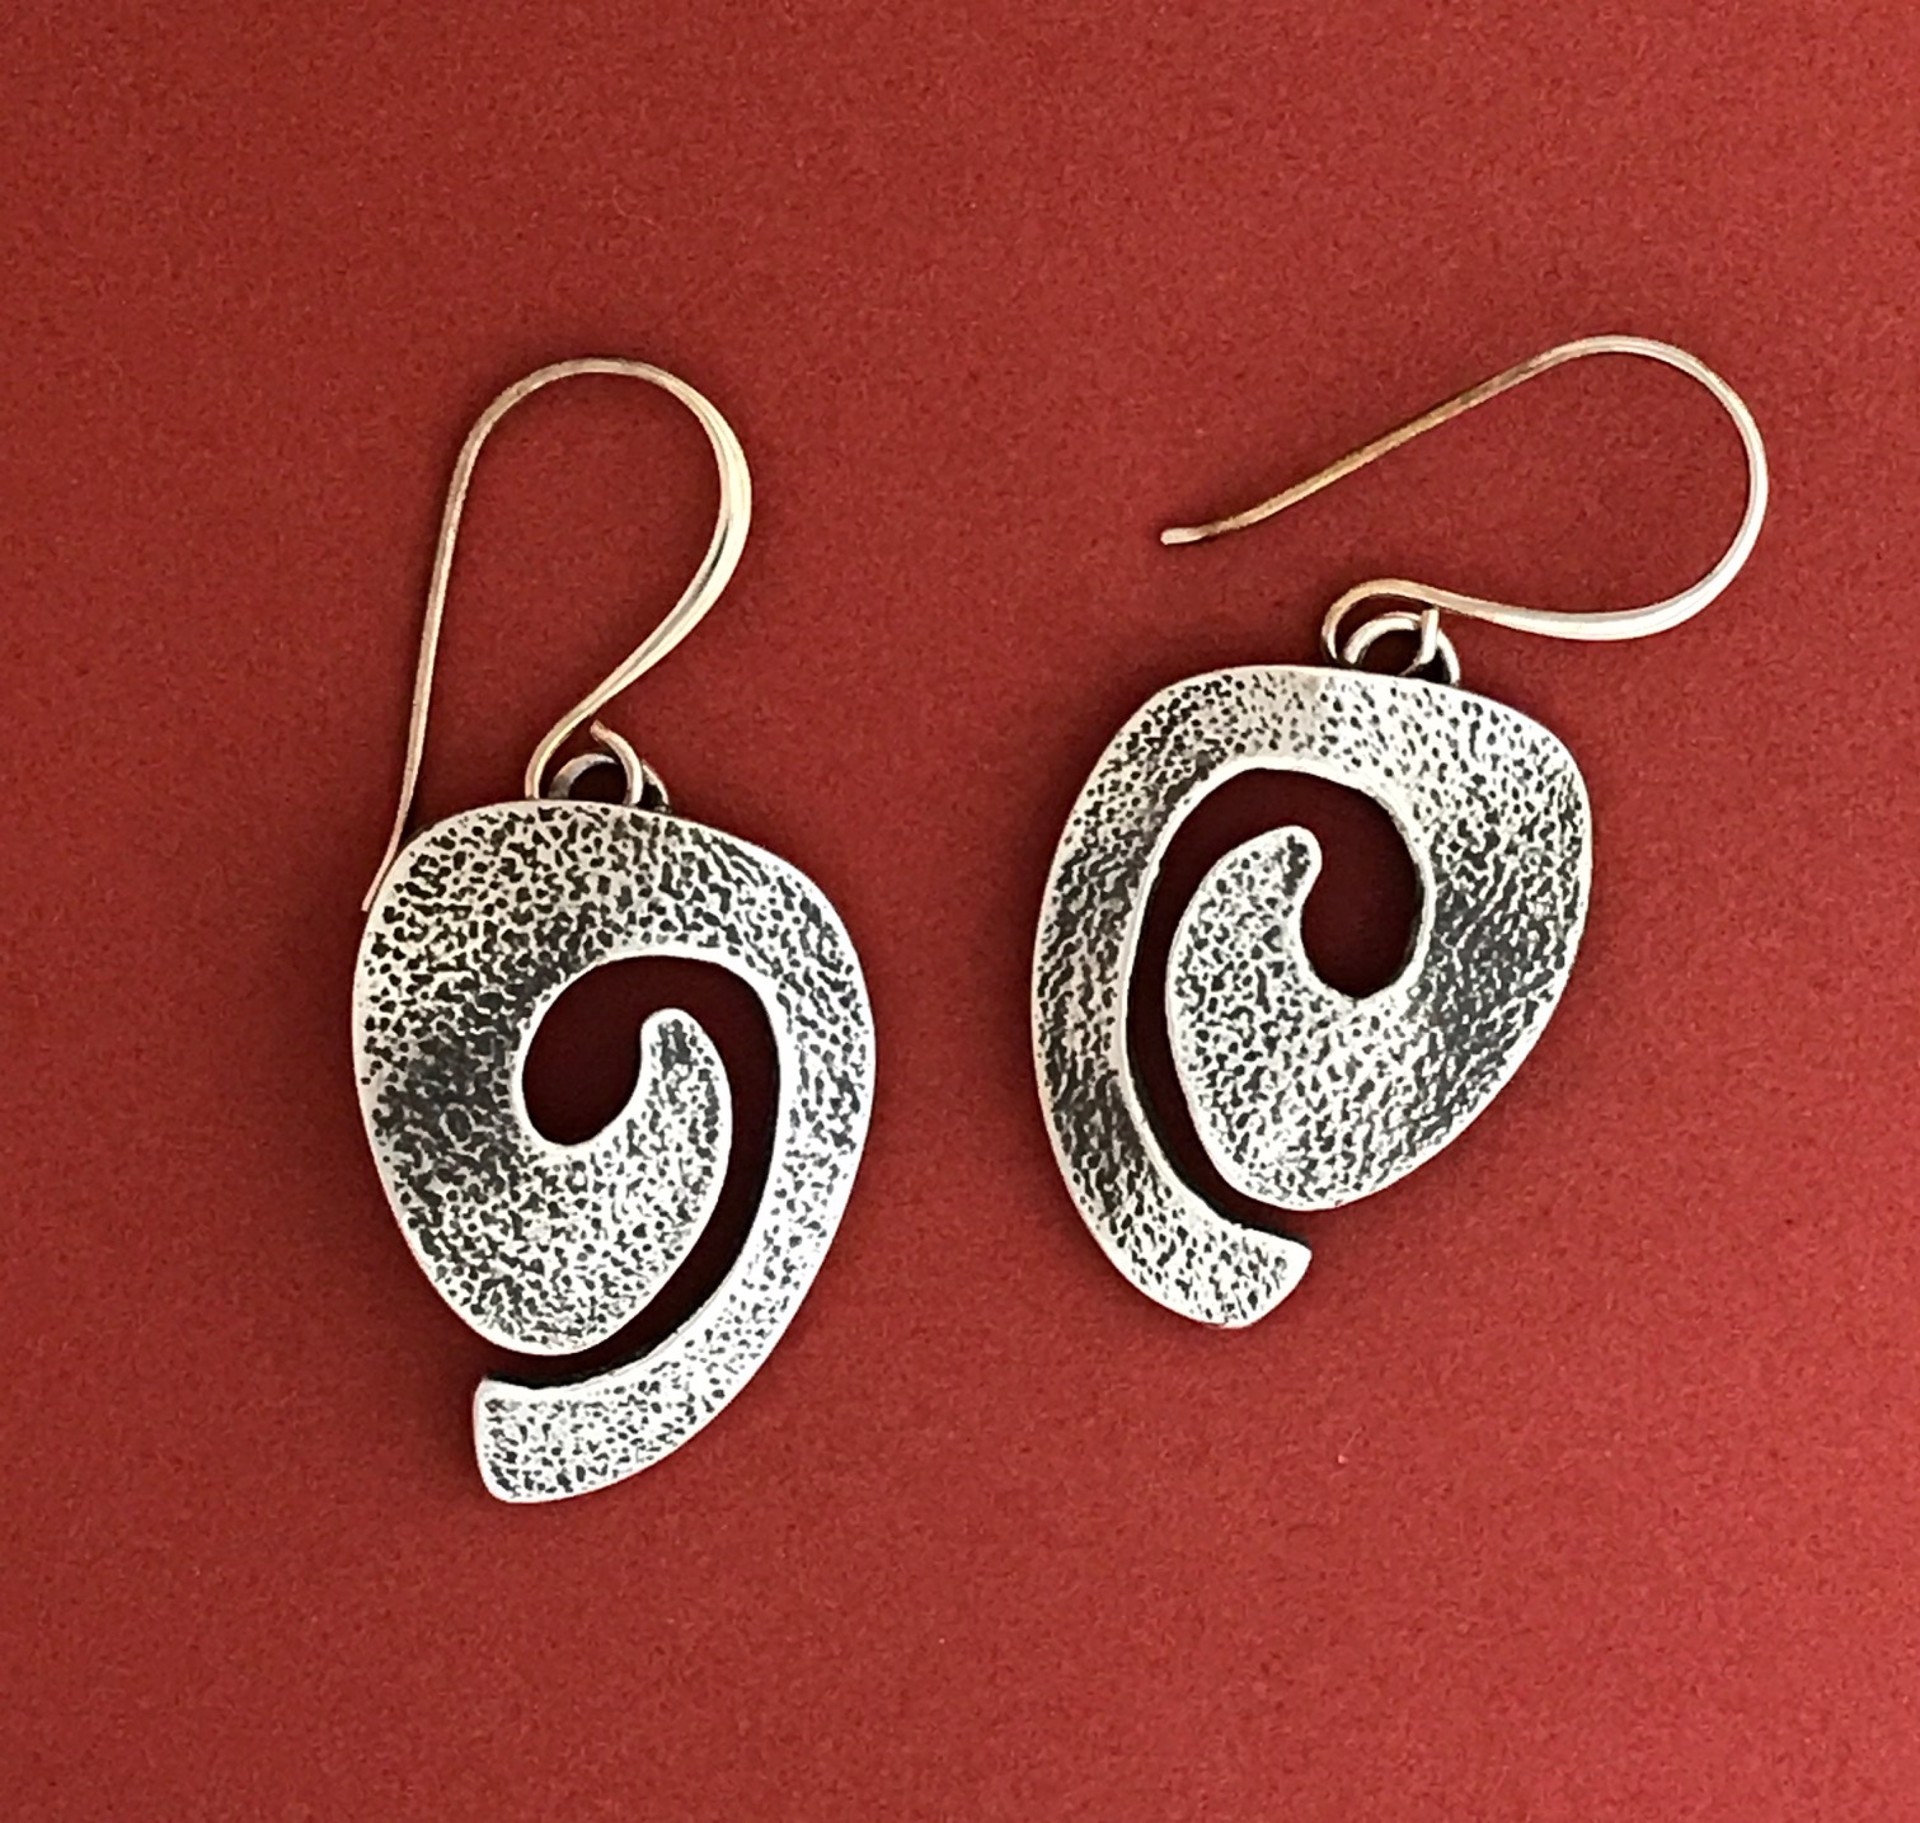 Swirl earrings (dangle) by Melanie A. Yazzie